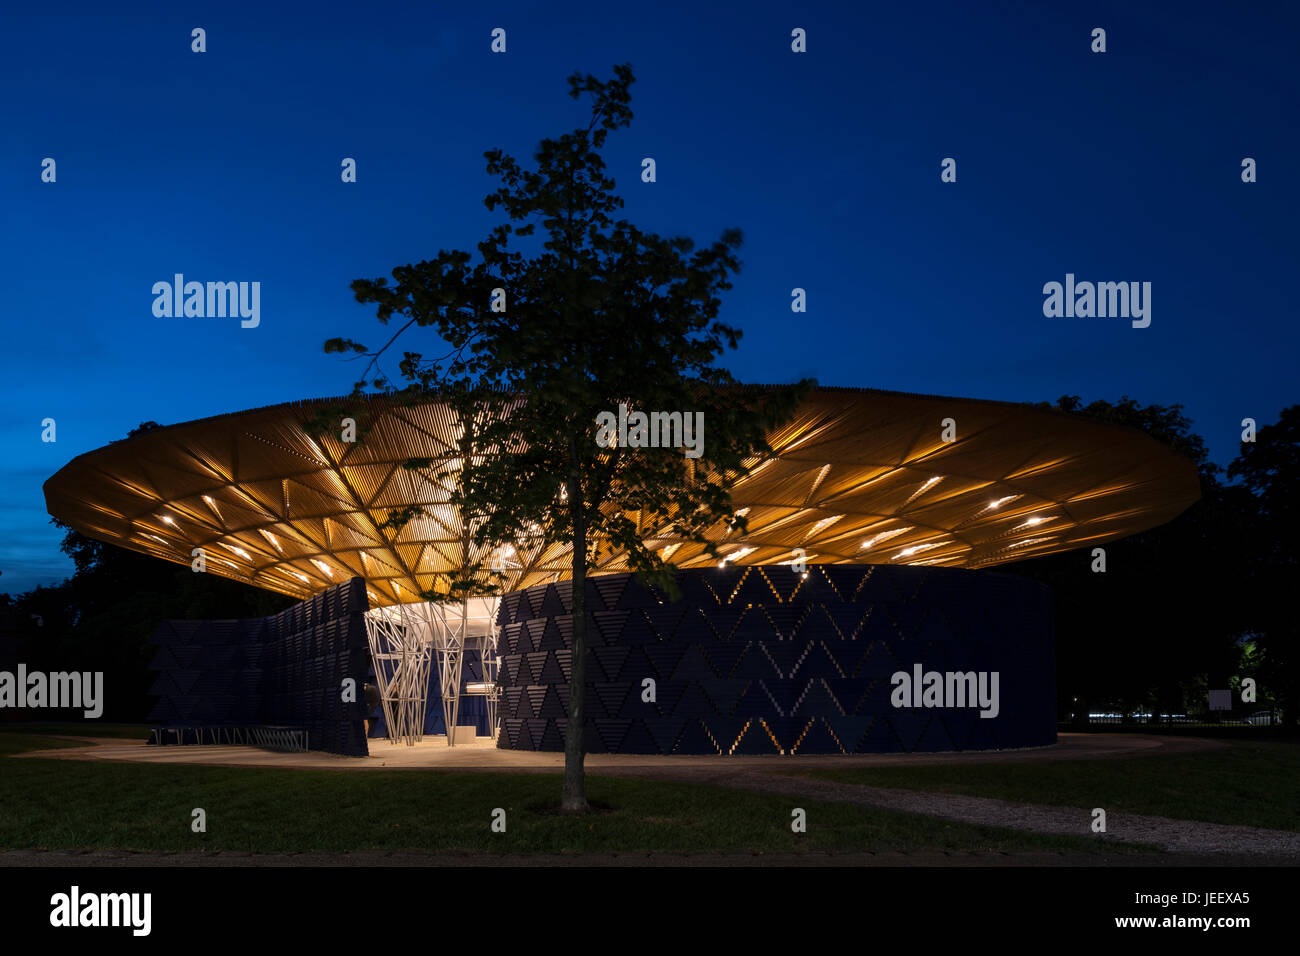 Zeigen Sie Nachtzeit mit Baum an. Serpentin Sommer Pavillon 2017, London, Vereinigtes Königreich. Architekt: Diebedo Francis Kéré, 2017. Stockfoto